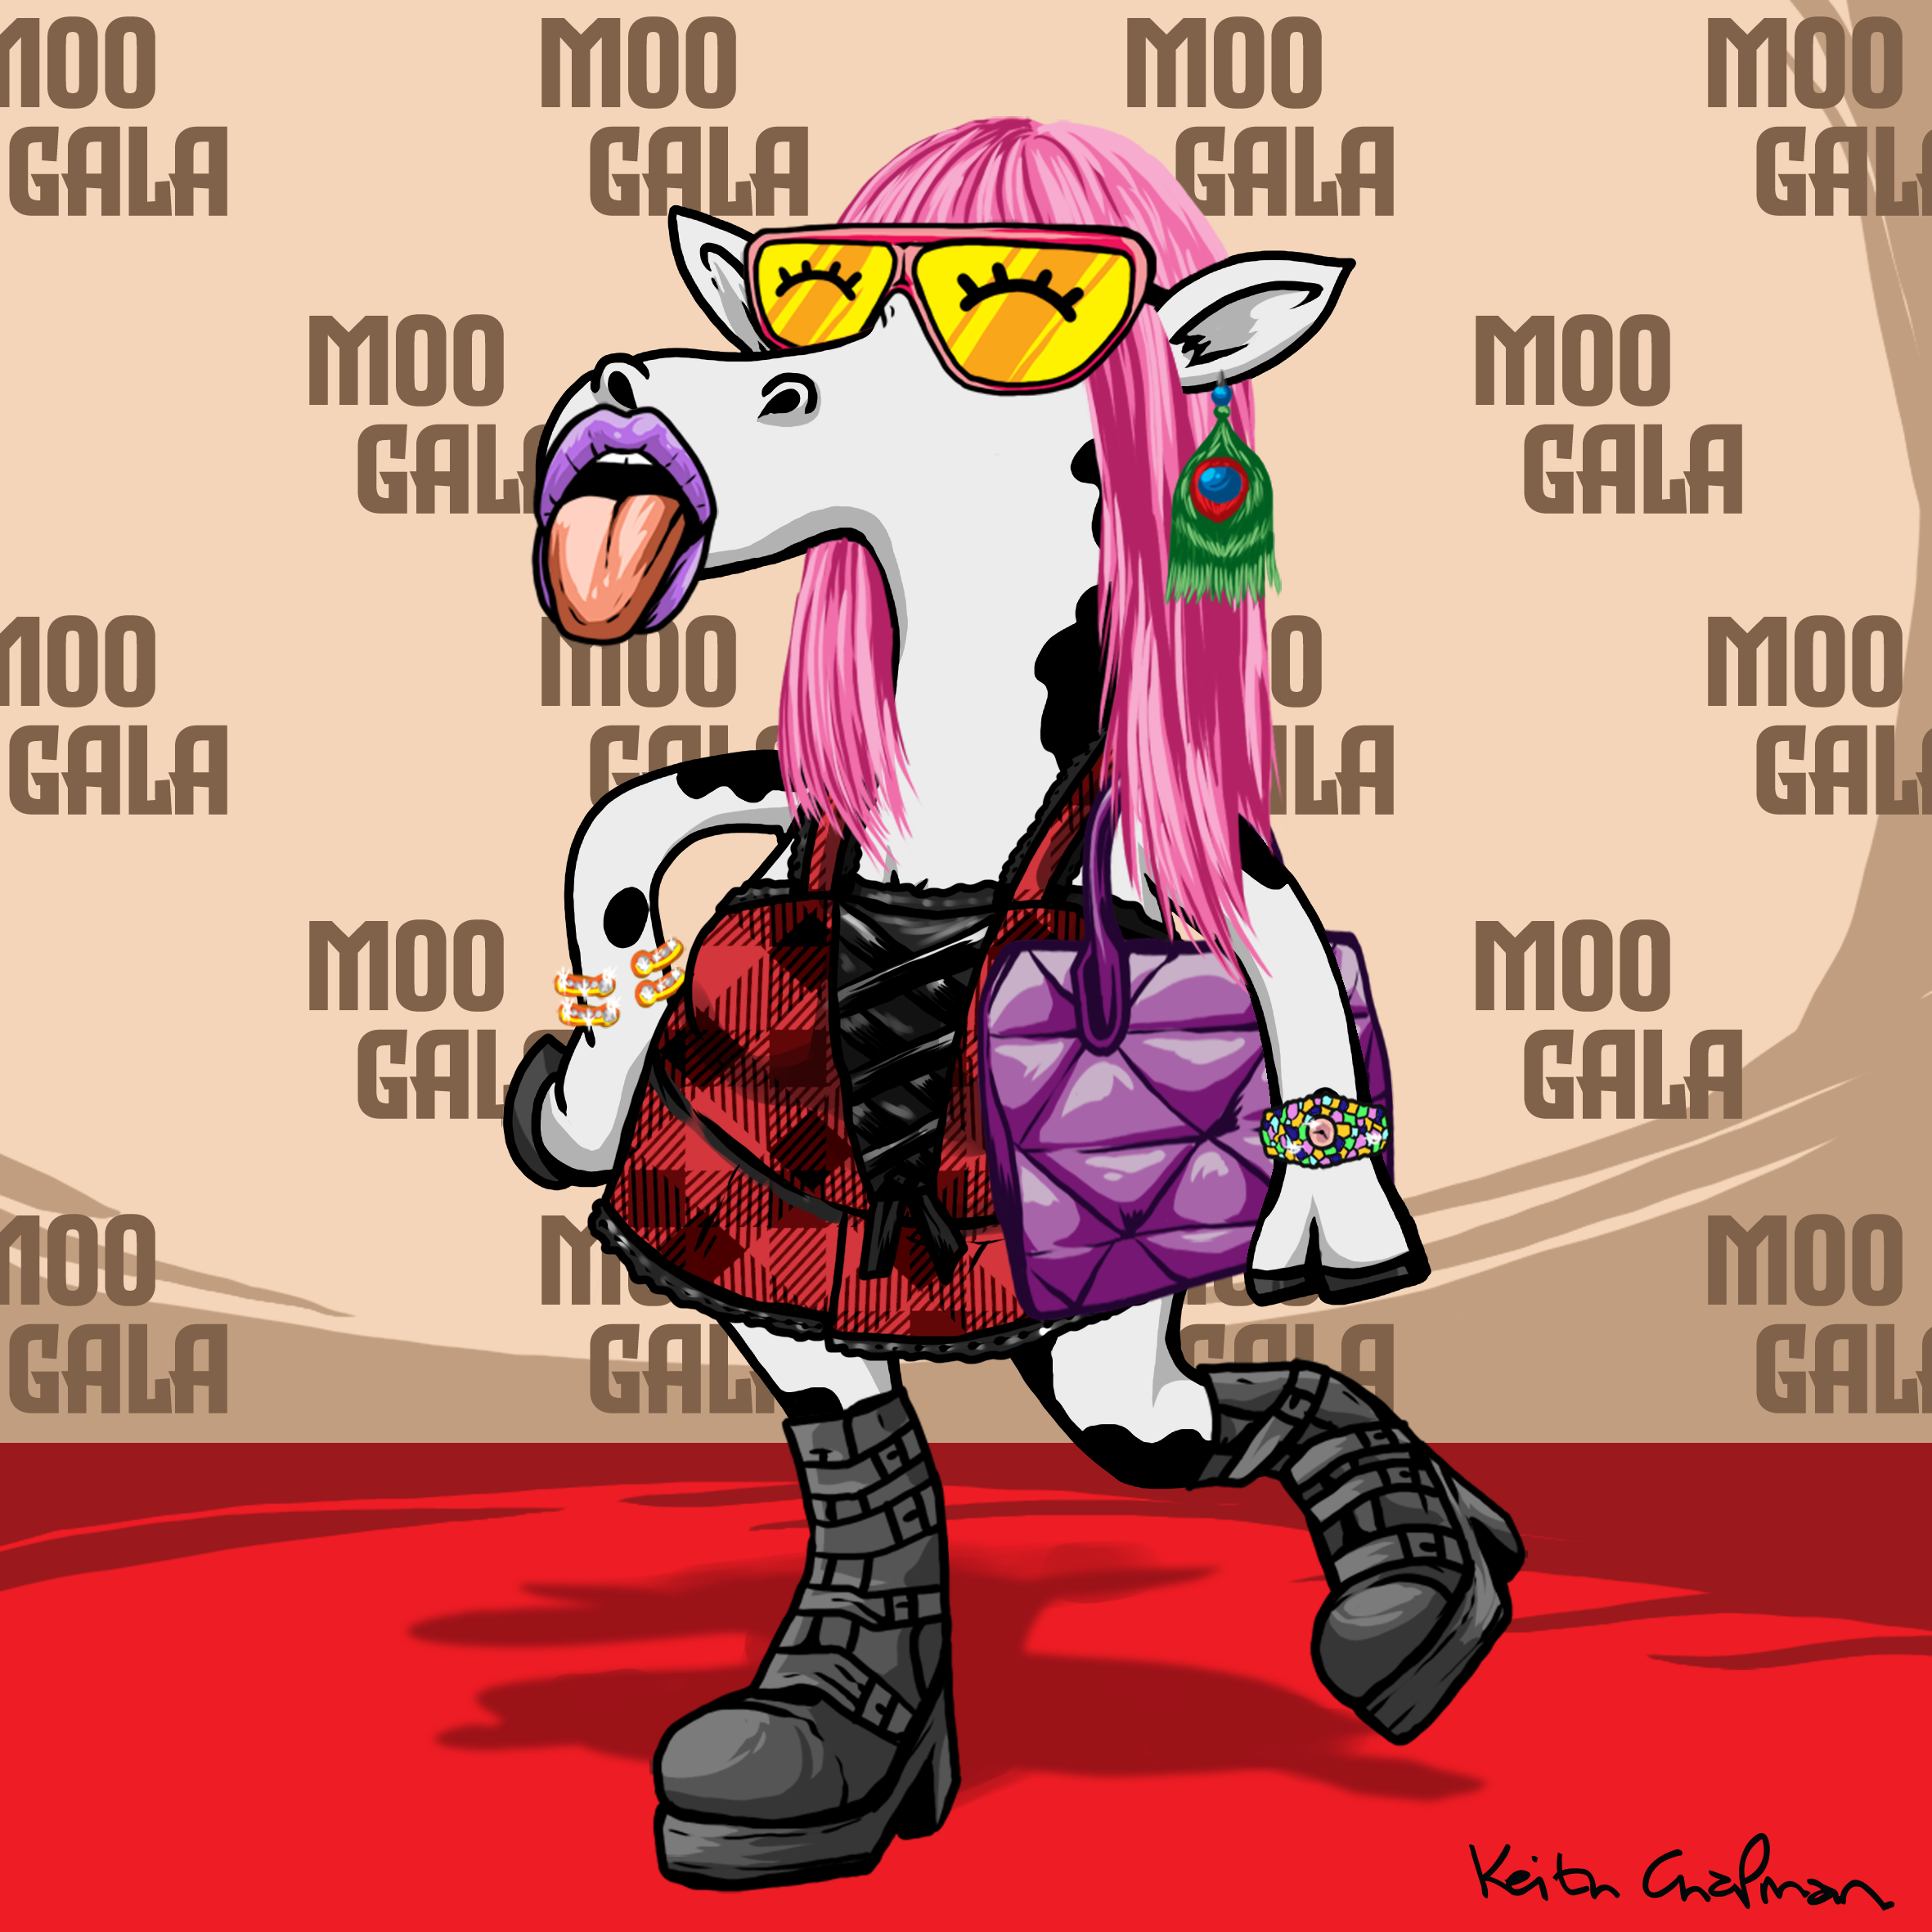 Moonie Moo